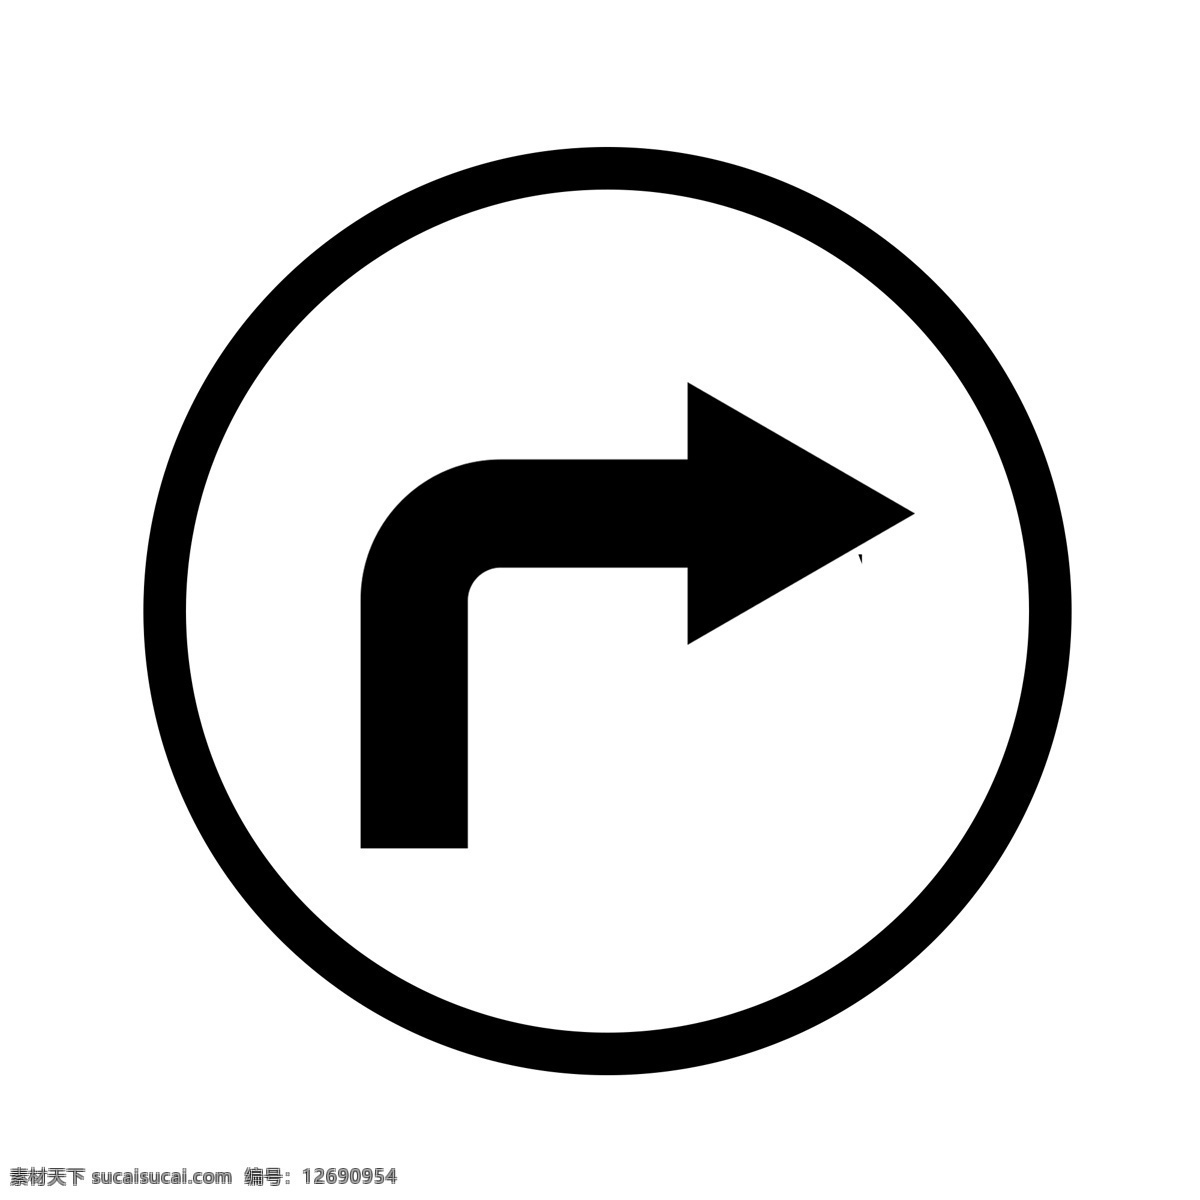 圆形 黑色 右 转 箭头 标识 牌 右转箭头 黑色箭头 圆形标识牌 转弯 方向 方向标识牌